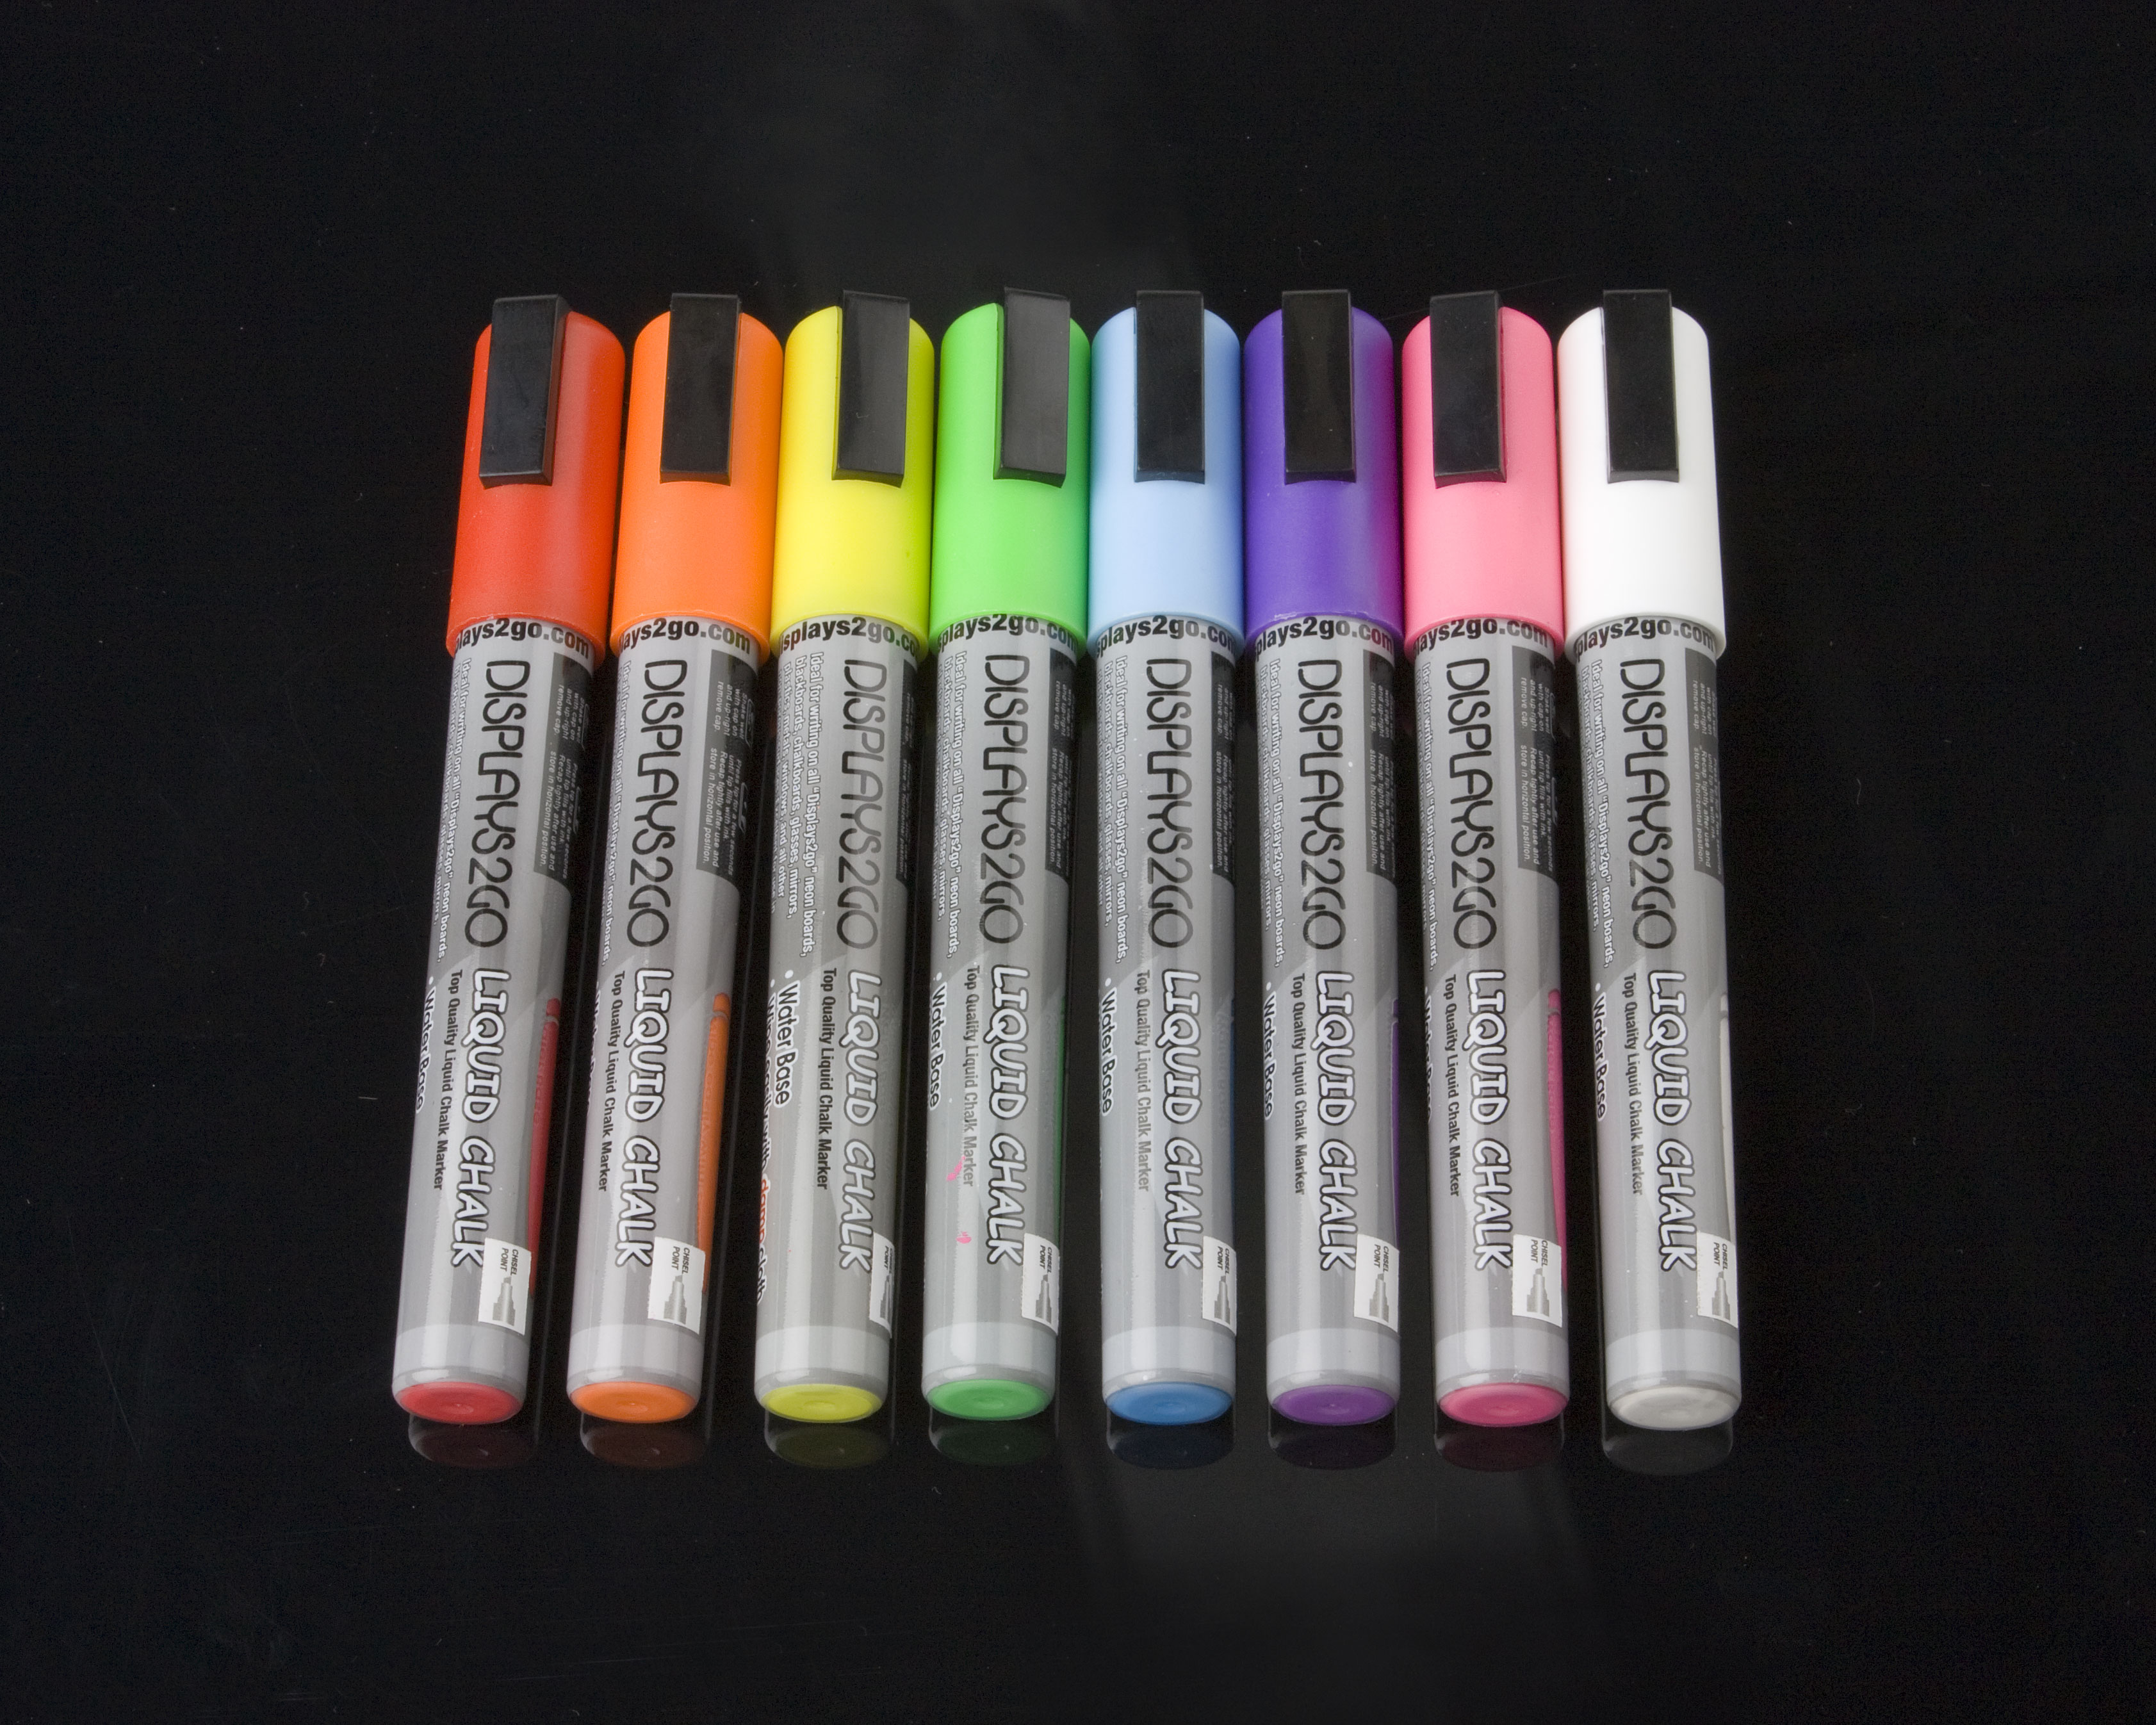 Set of (8) Chalk Markers - Neon Brite